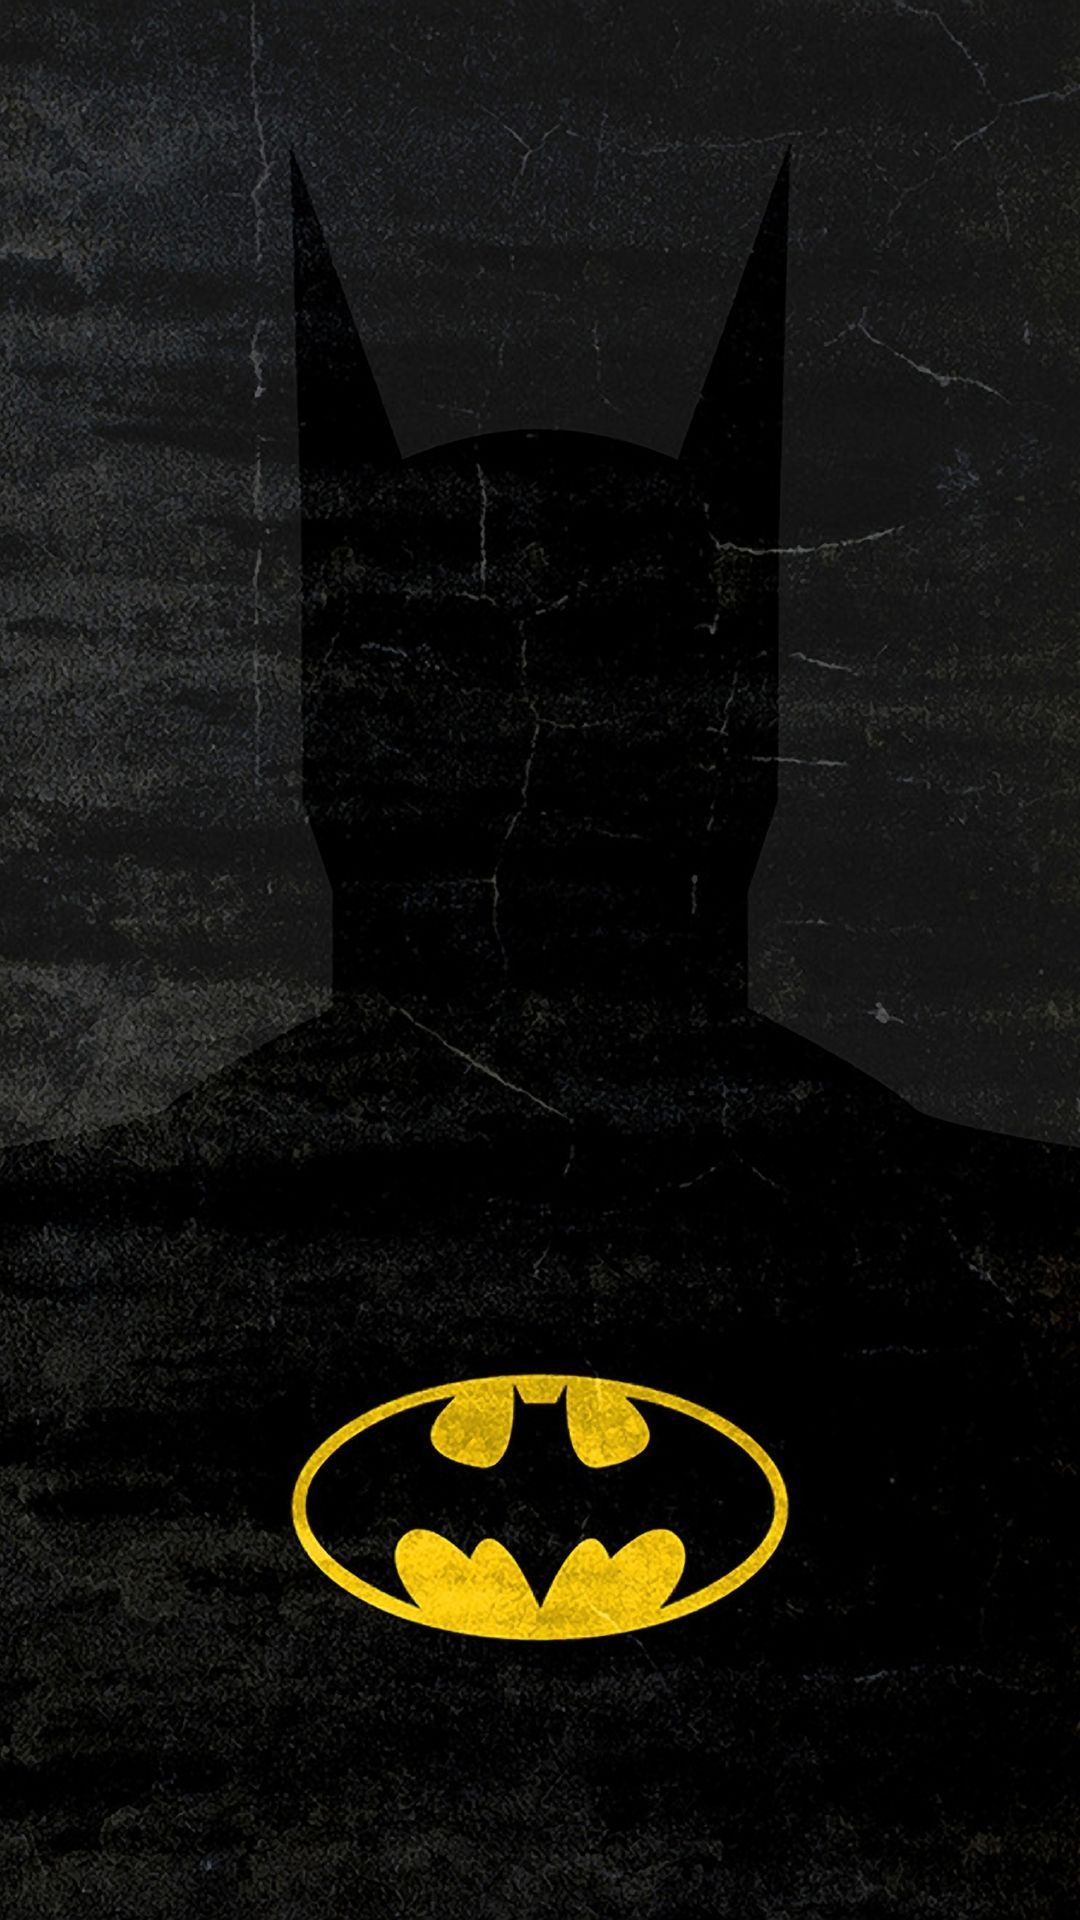 superhero iphone wallpaper,batman,superhero,fictional character,justice league,black cat